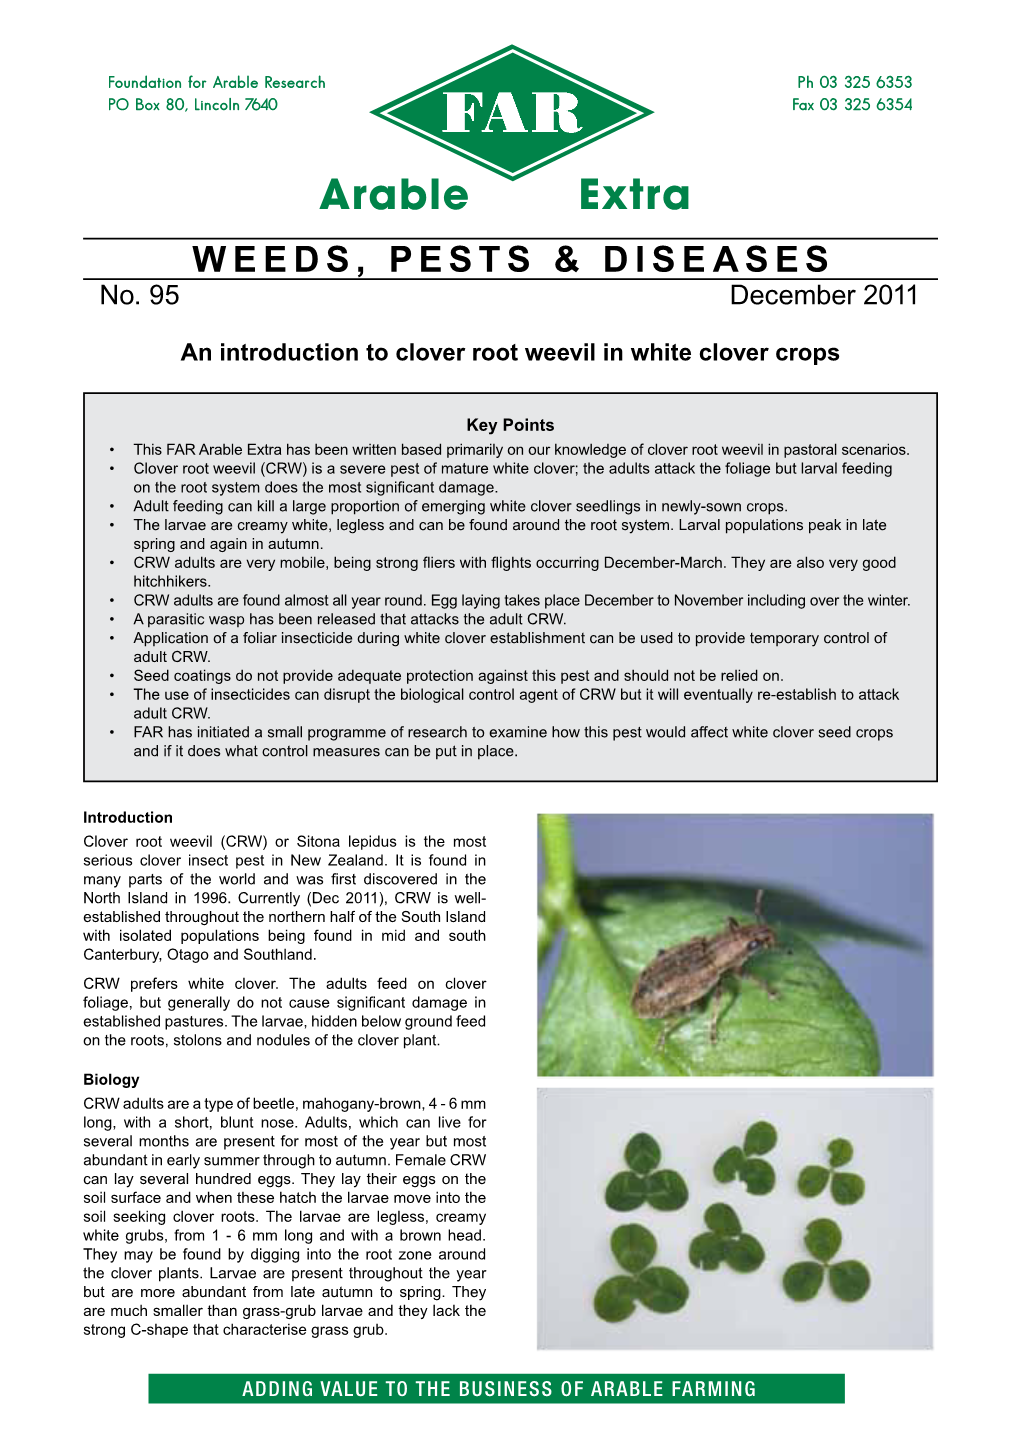 Weeds, Pests & Diseases